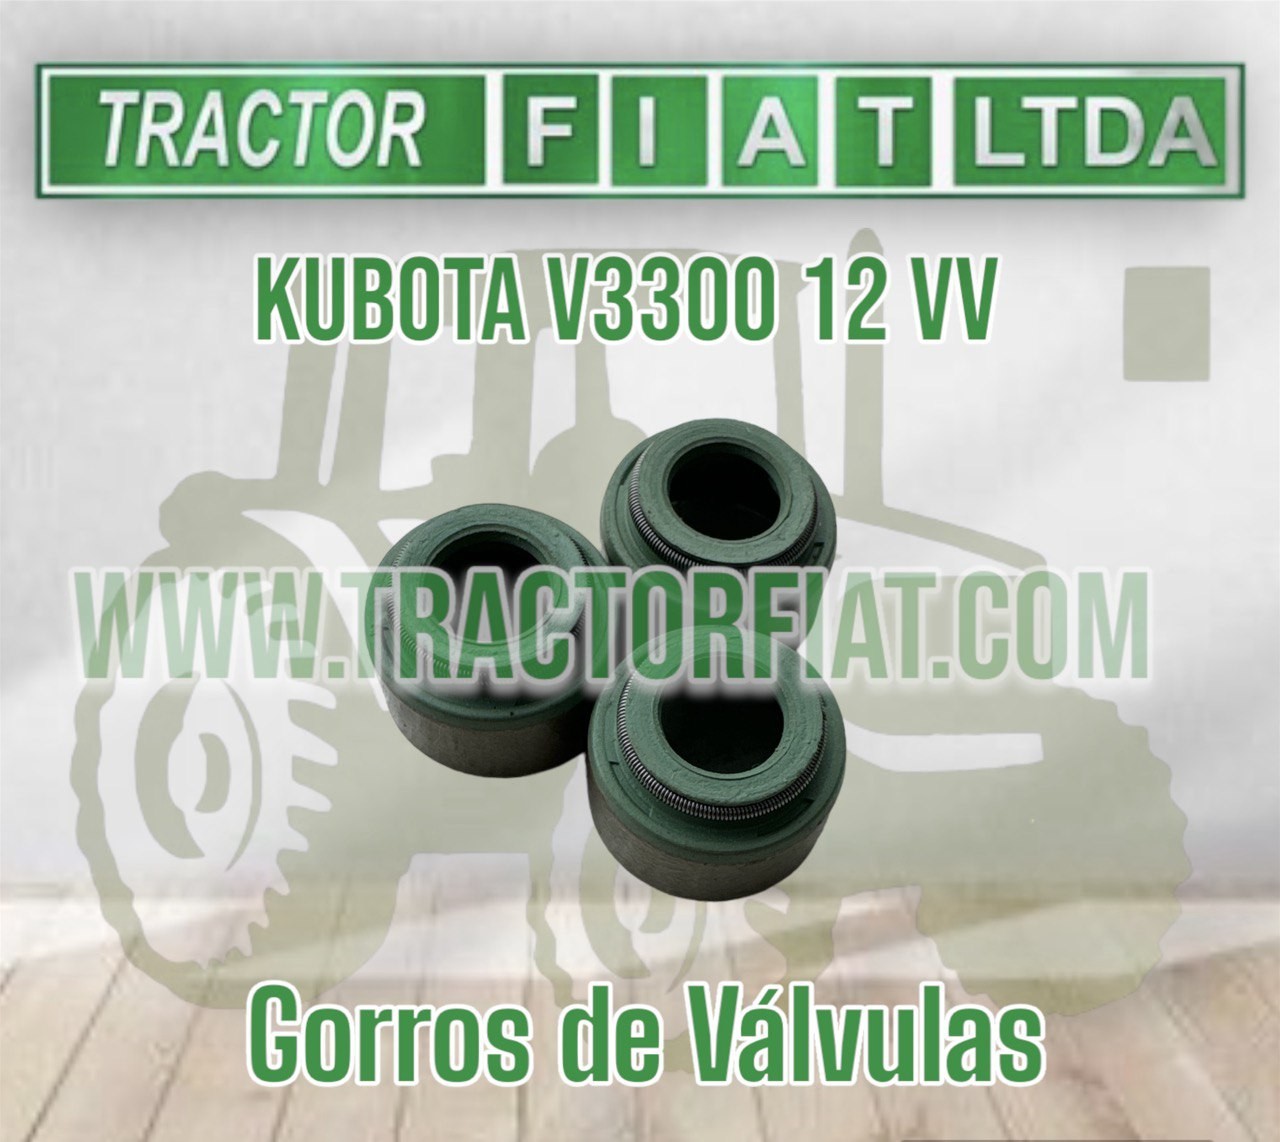 GORROS DE VALVULA - MOTOR KUBOTA V3300 12 VALVULAS